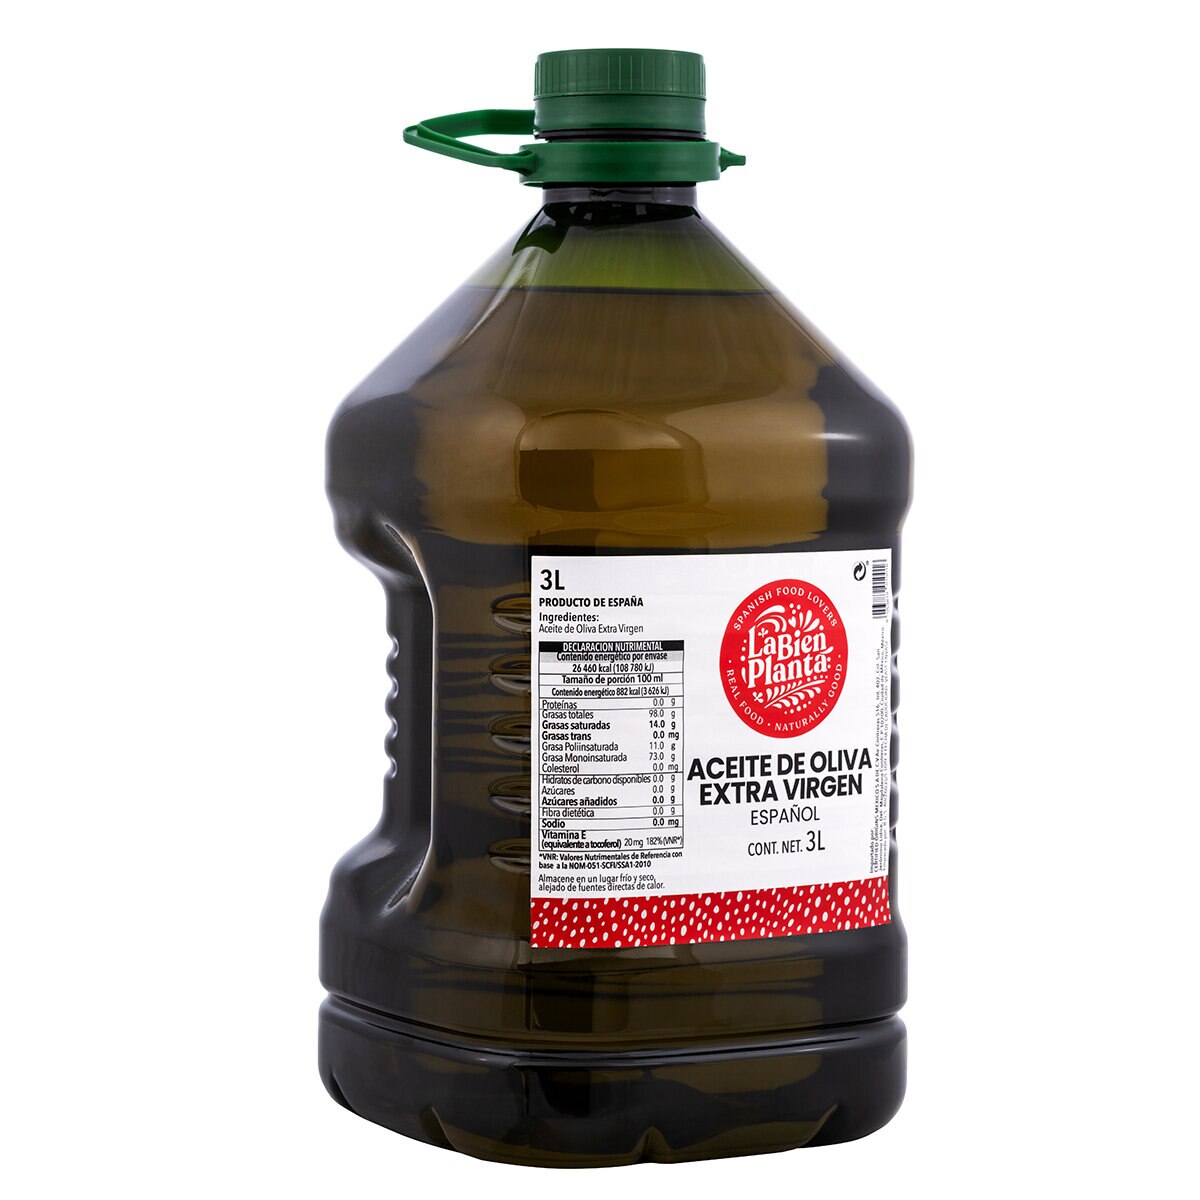 Aceite de Oliva 100% puro — 5L – Inés